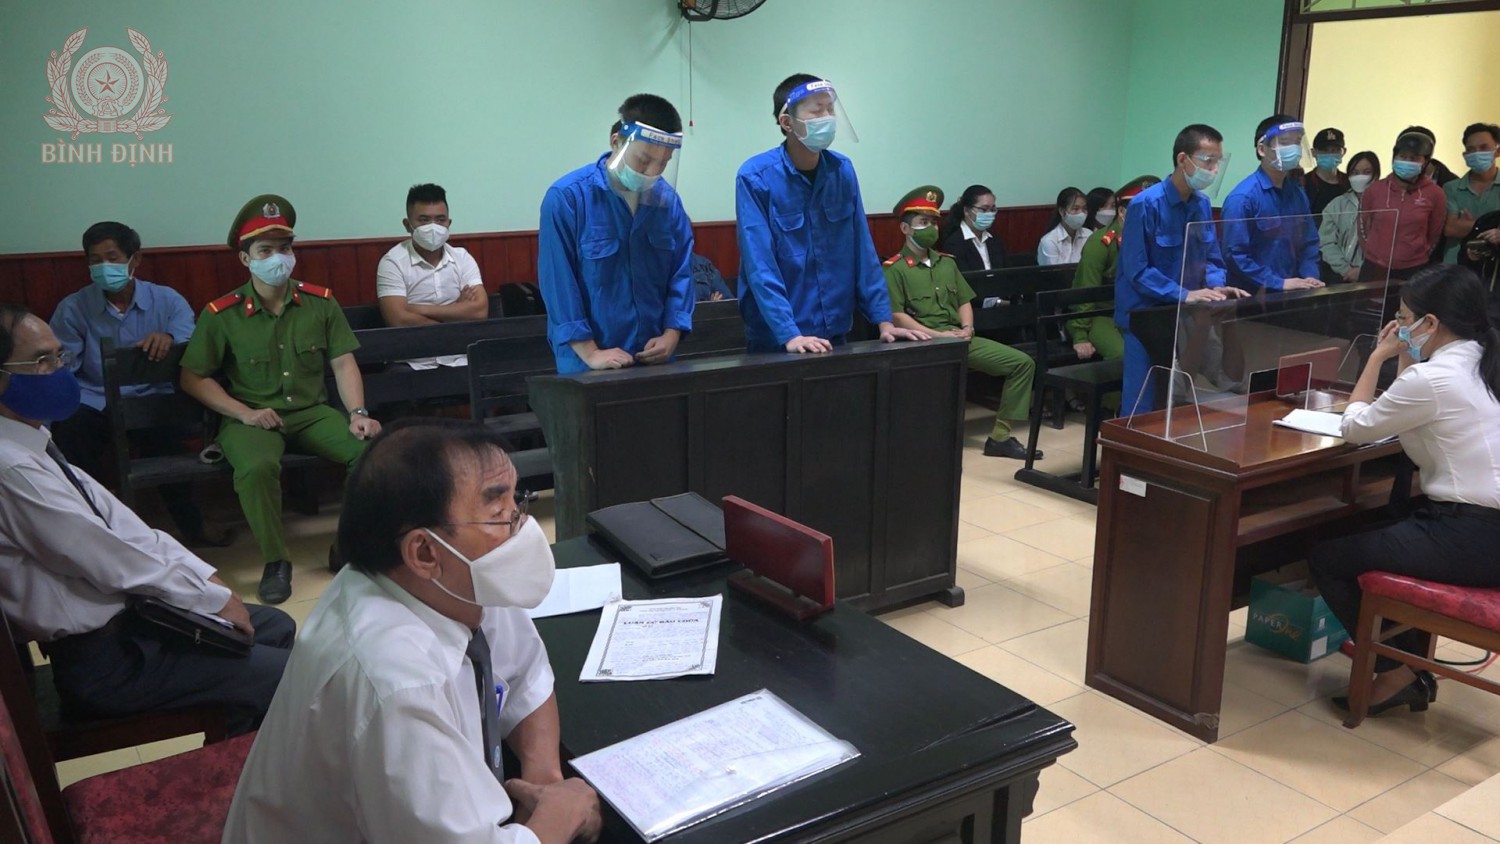 04 đối tượng tại phiên tòa sơ thẩm, Nguyễn Văn Cân mặc áo xanh ngoài cùng bên trái.